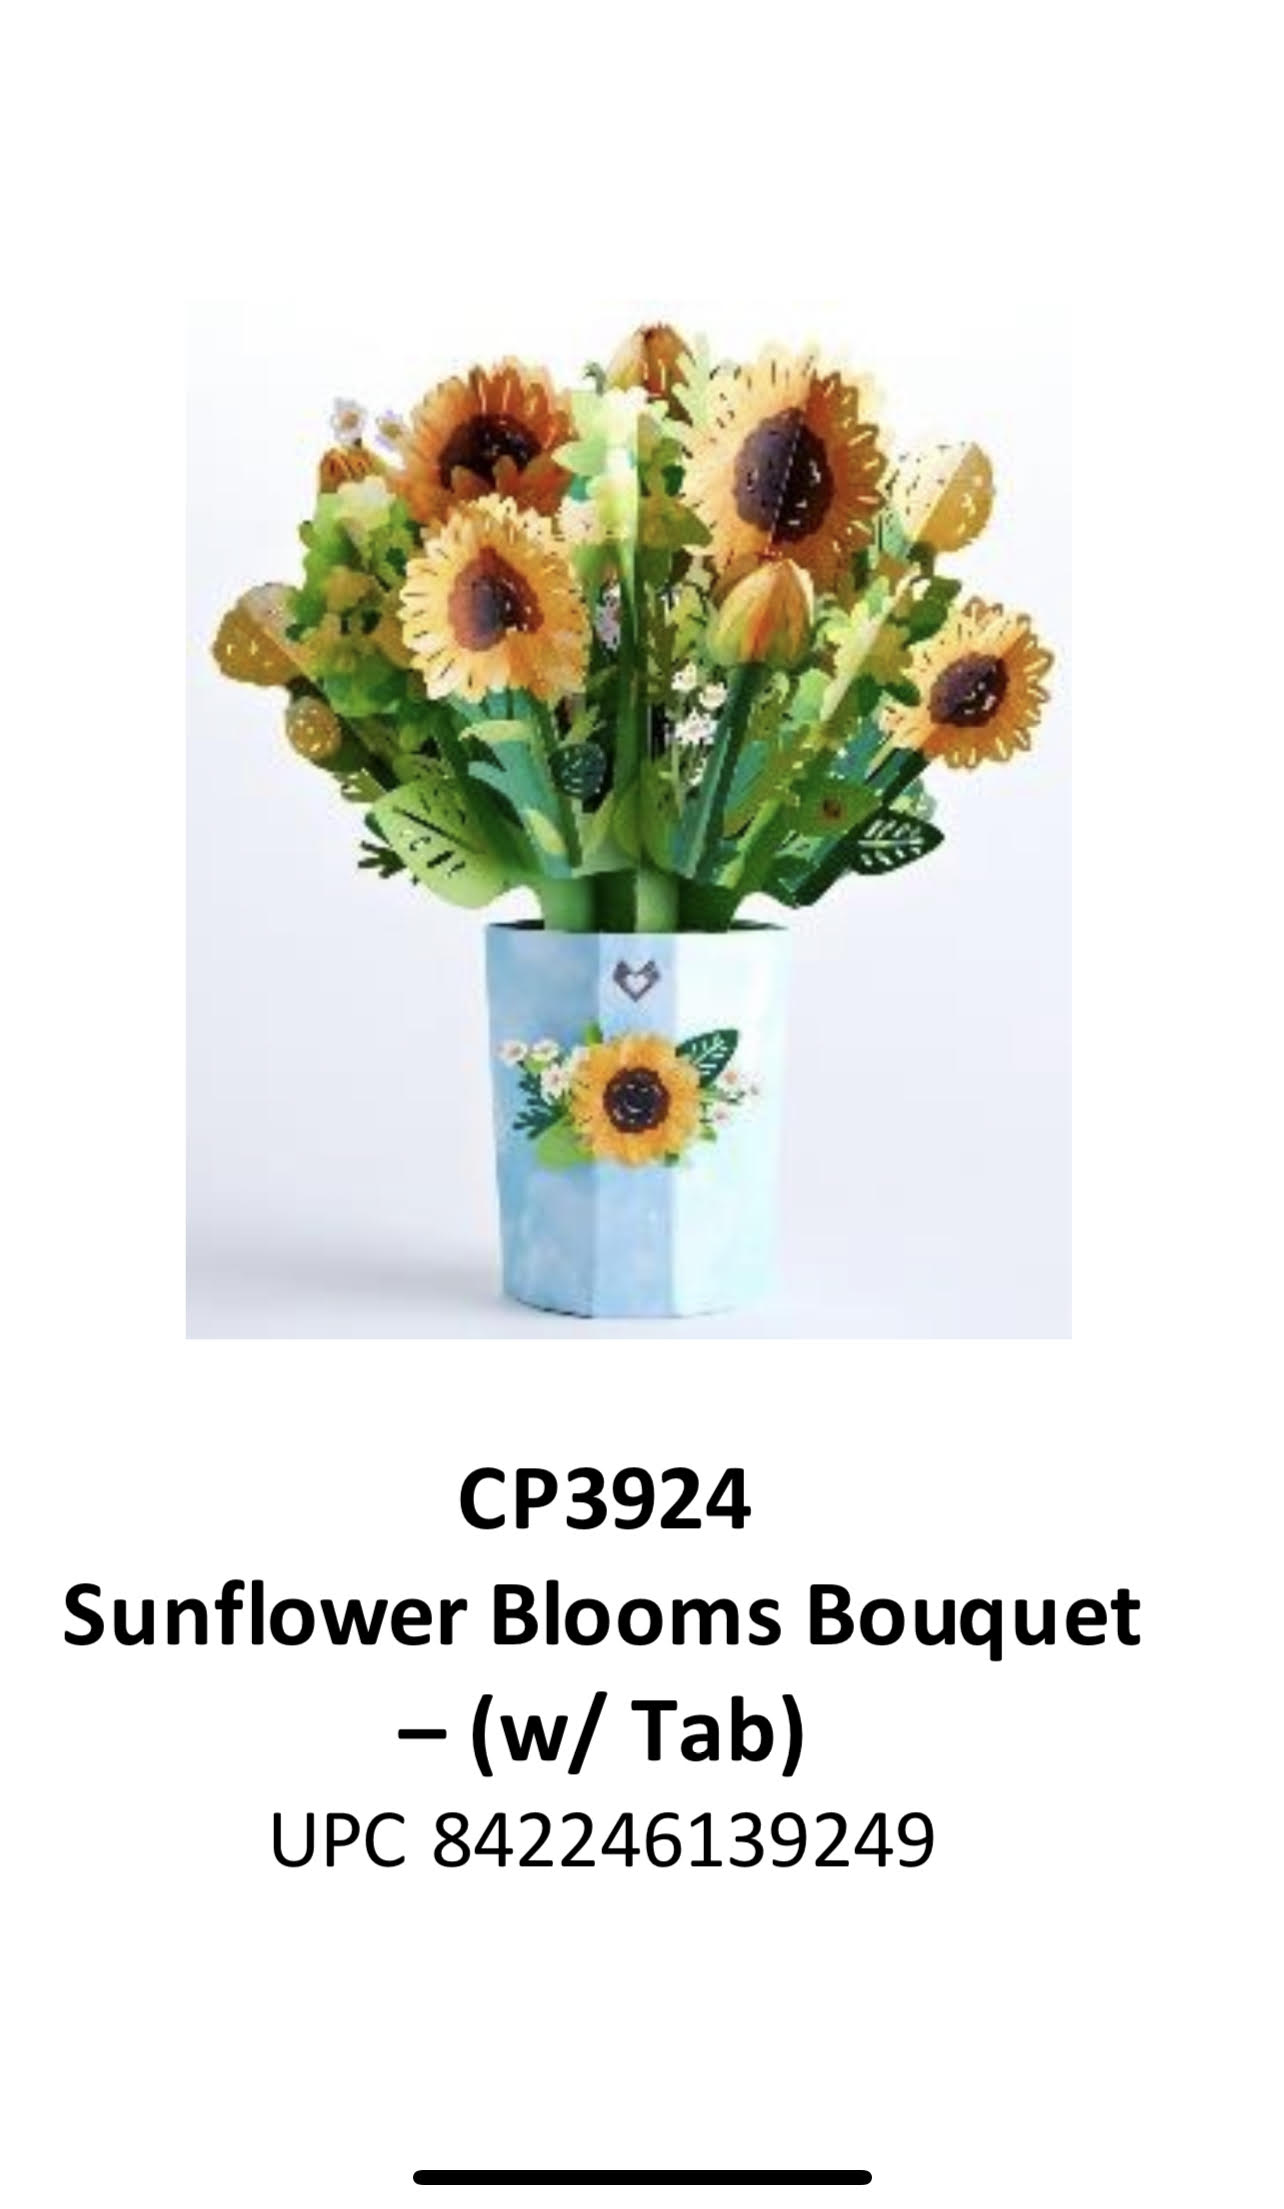 Sunflower Blooms Bouquet Pop Up Card  - Sunflower Blooms Bouquet w/ Tab Pop Up Card    10.5 in. Tall x 7.5 in. Wide